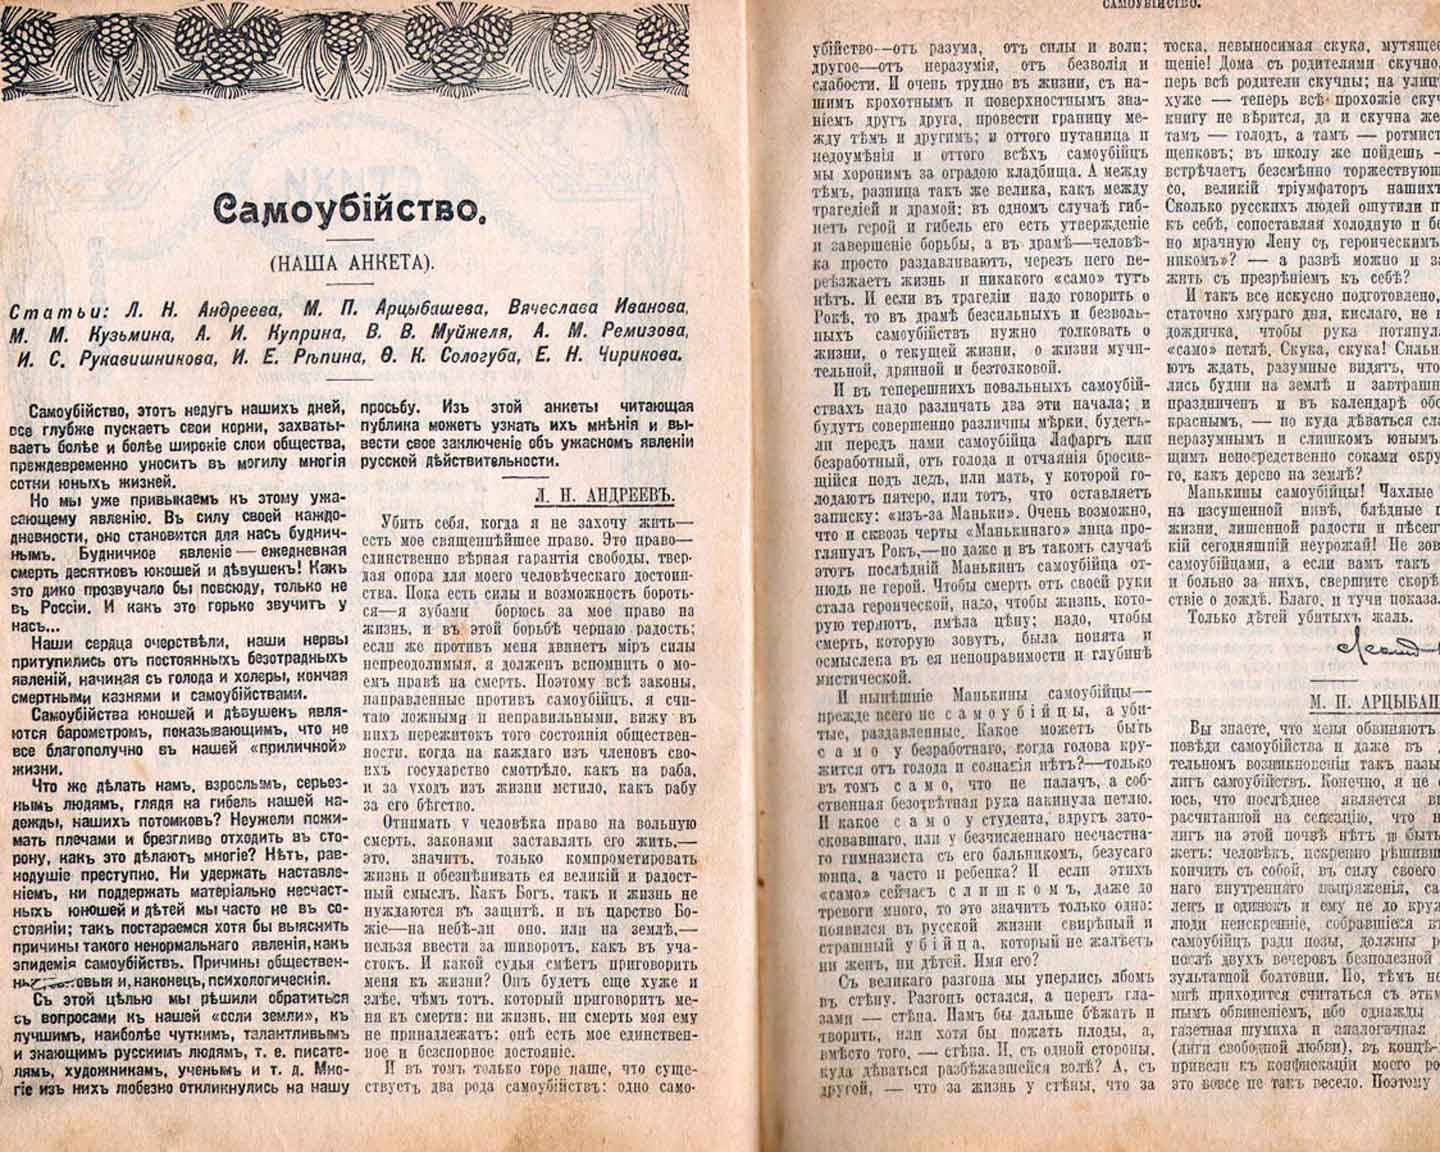 «Самоубийство». Анкета в «Новом слове», 1912.